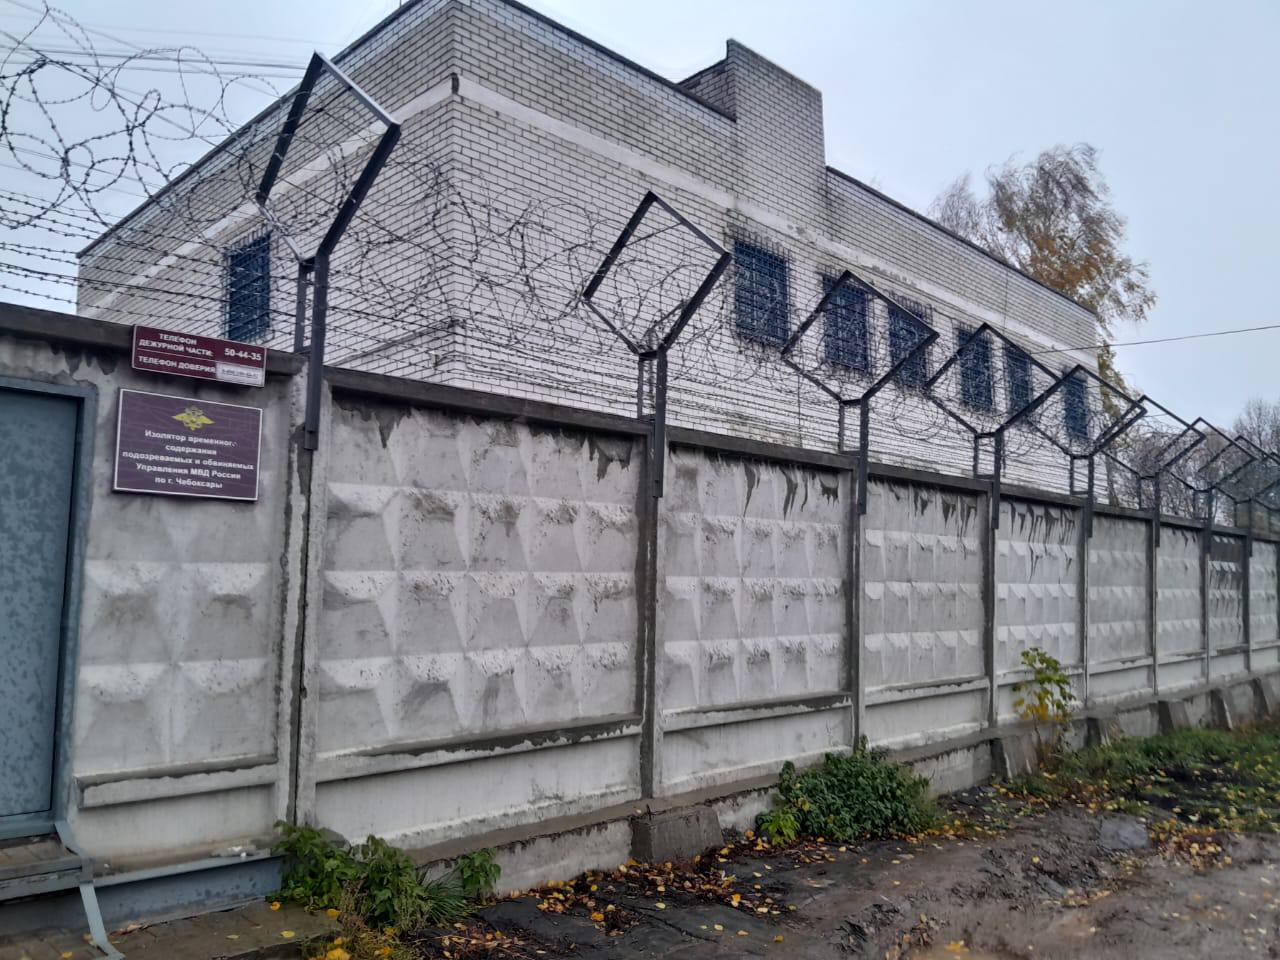 В Чувашской Республике полицейские задержали ульяновца с 700 граммами мефедрона